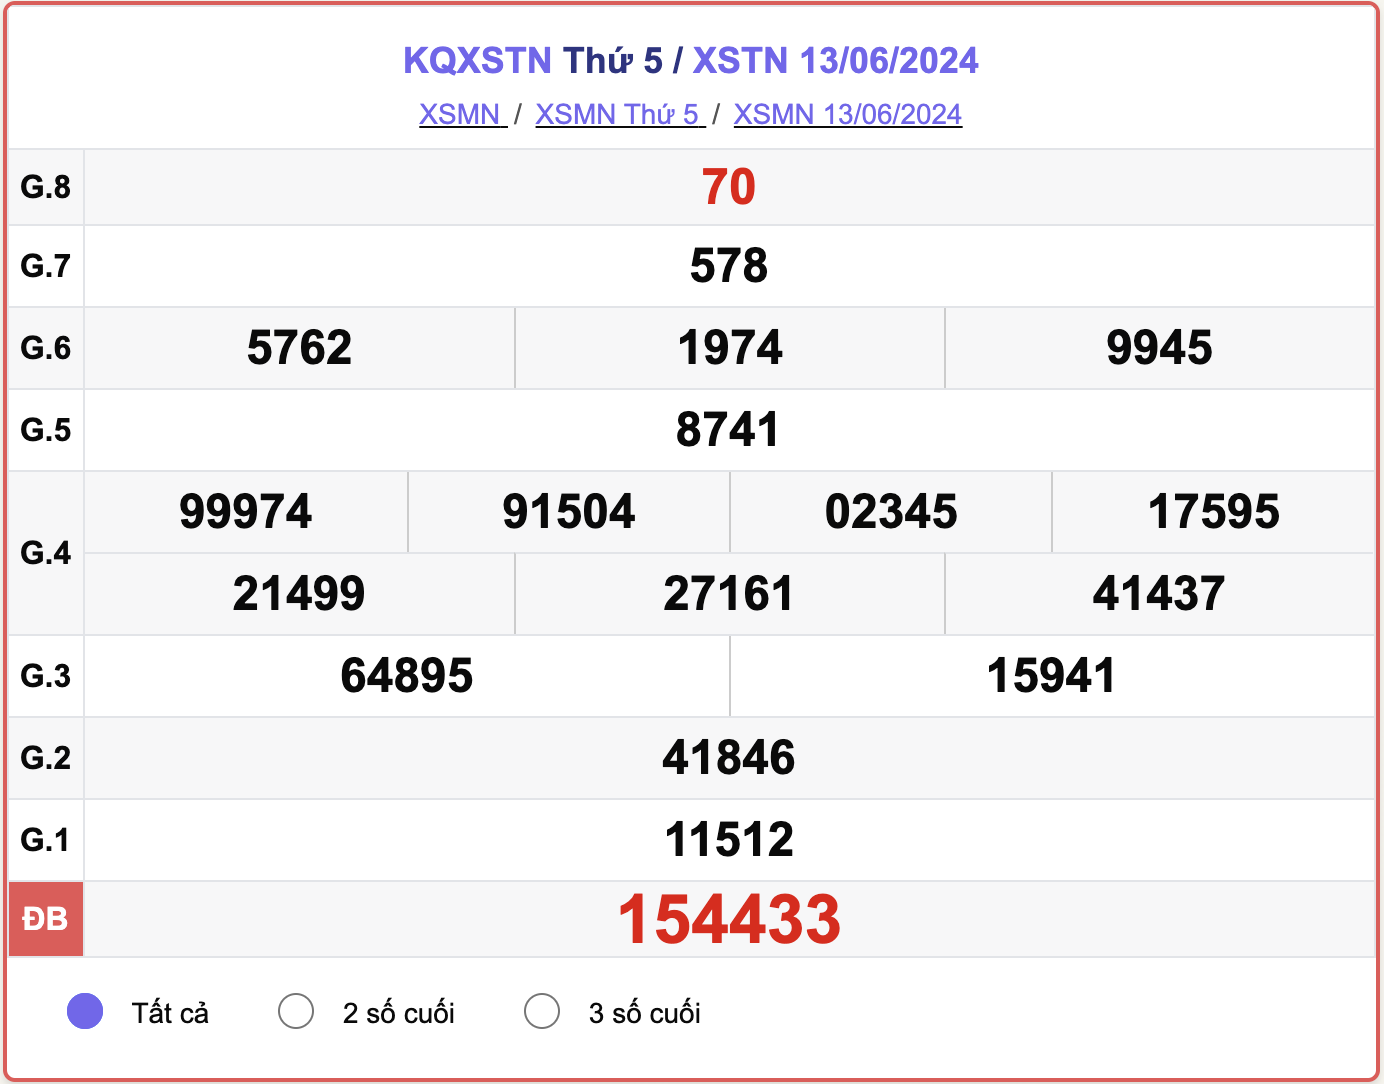 XSTN 13/6, kết quả xổ số Tây Ninh hôm nay 13/6/2024.